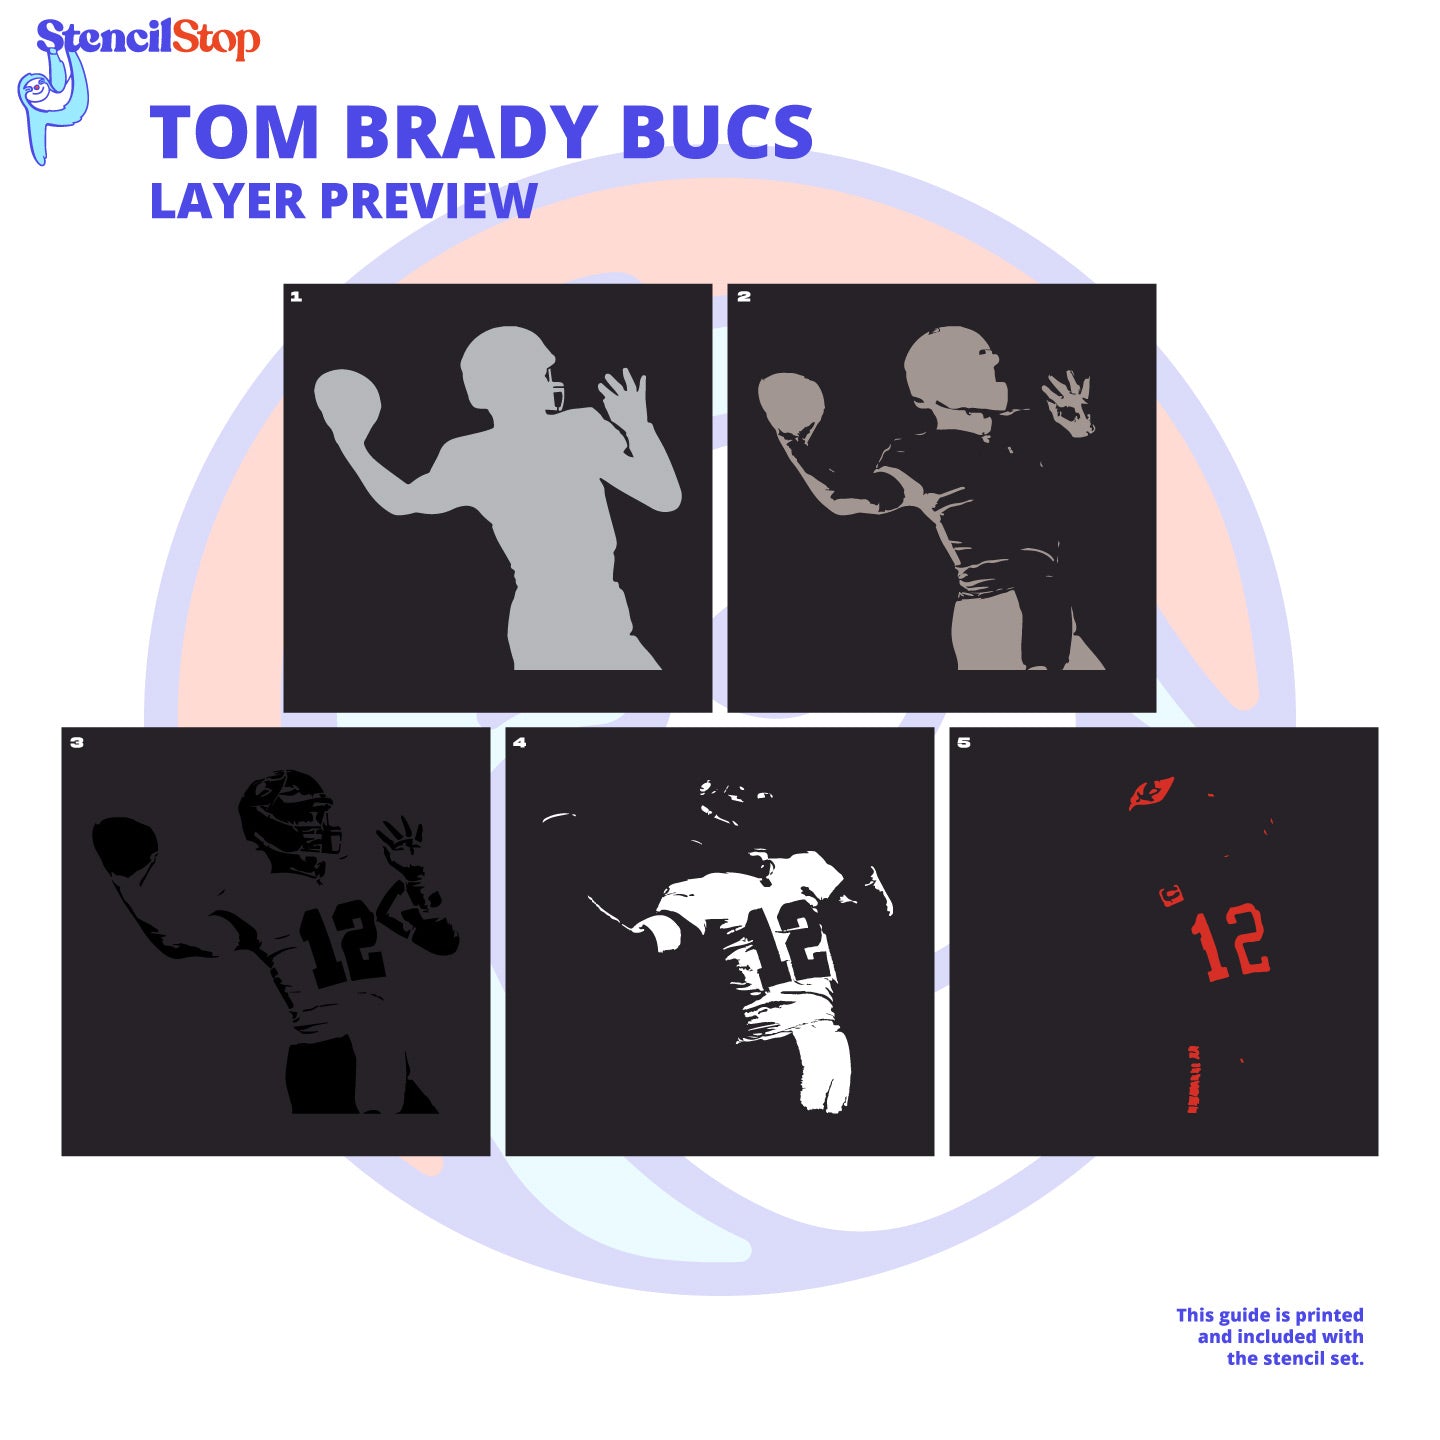 Tom Brady "Bucs" Layered Stencil Preview